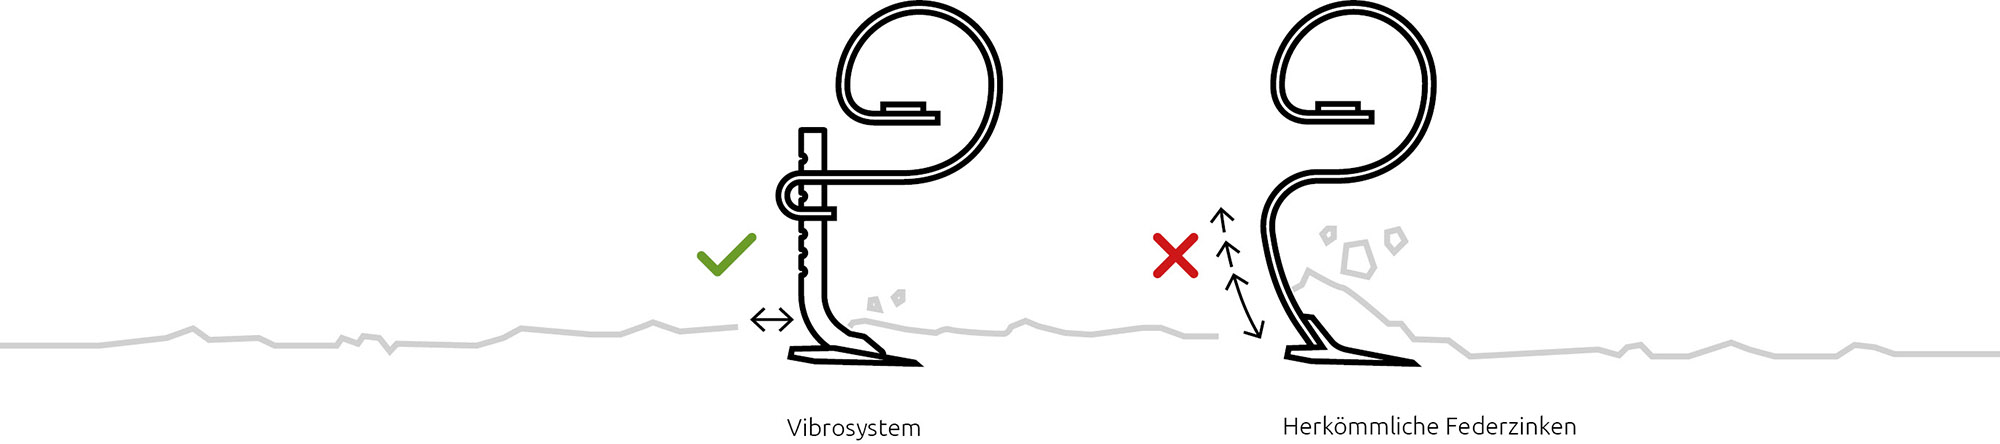 vibrosystem-mit-ohne